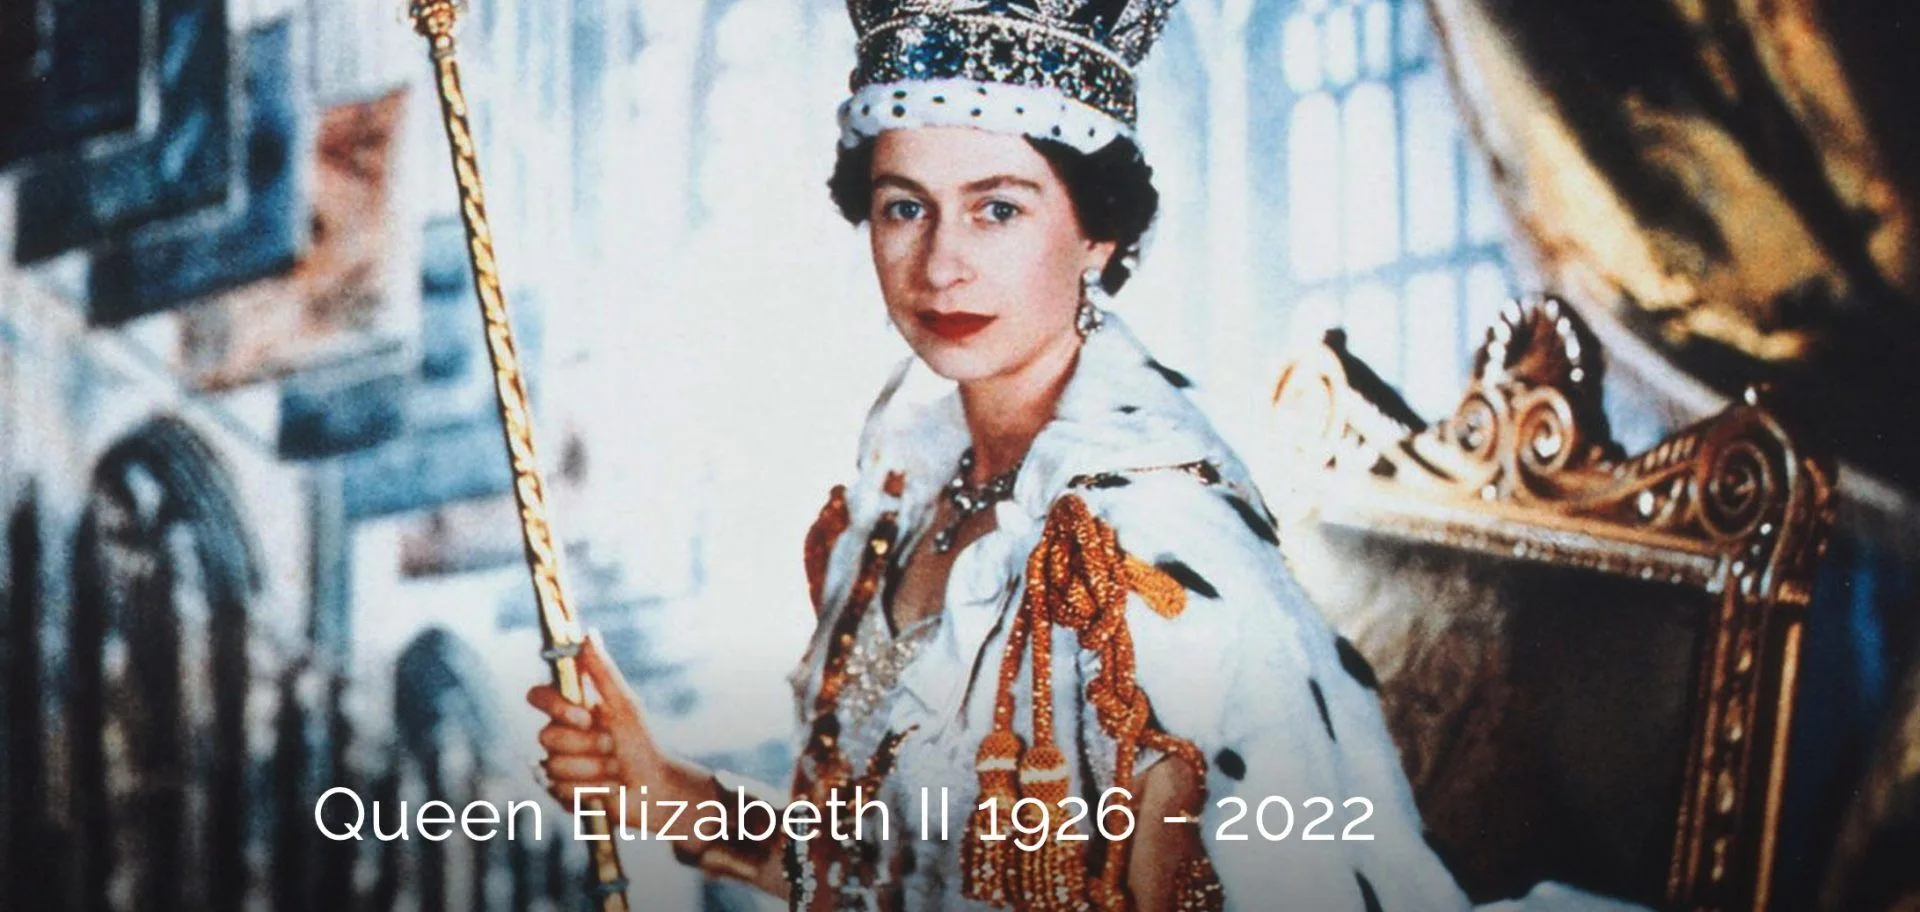 Psychotherapist Explains How To Speak To Children On the Passing Of Queen Elizabeth II